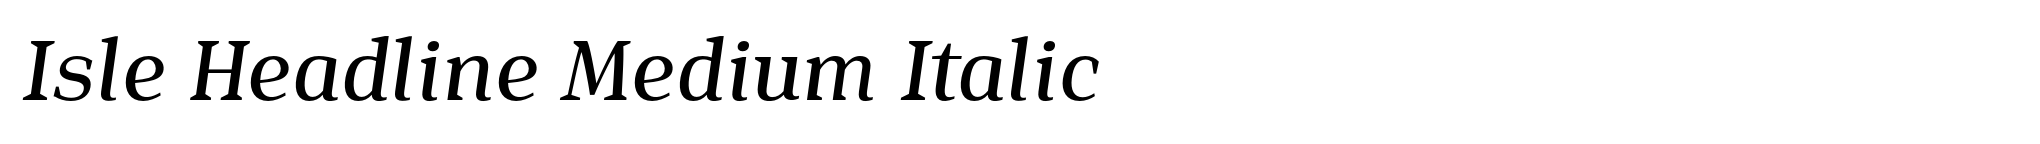 Isle Headline Medium Italic image